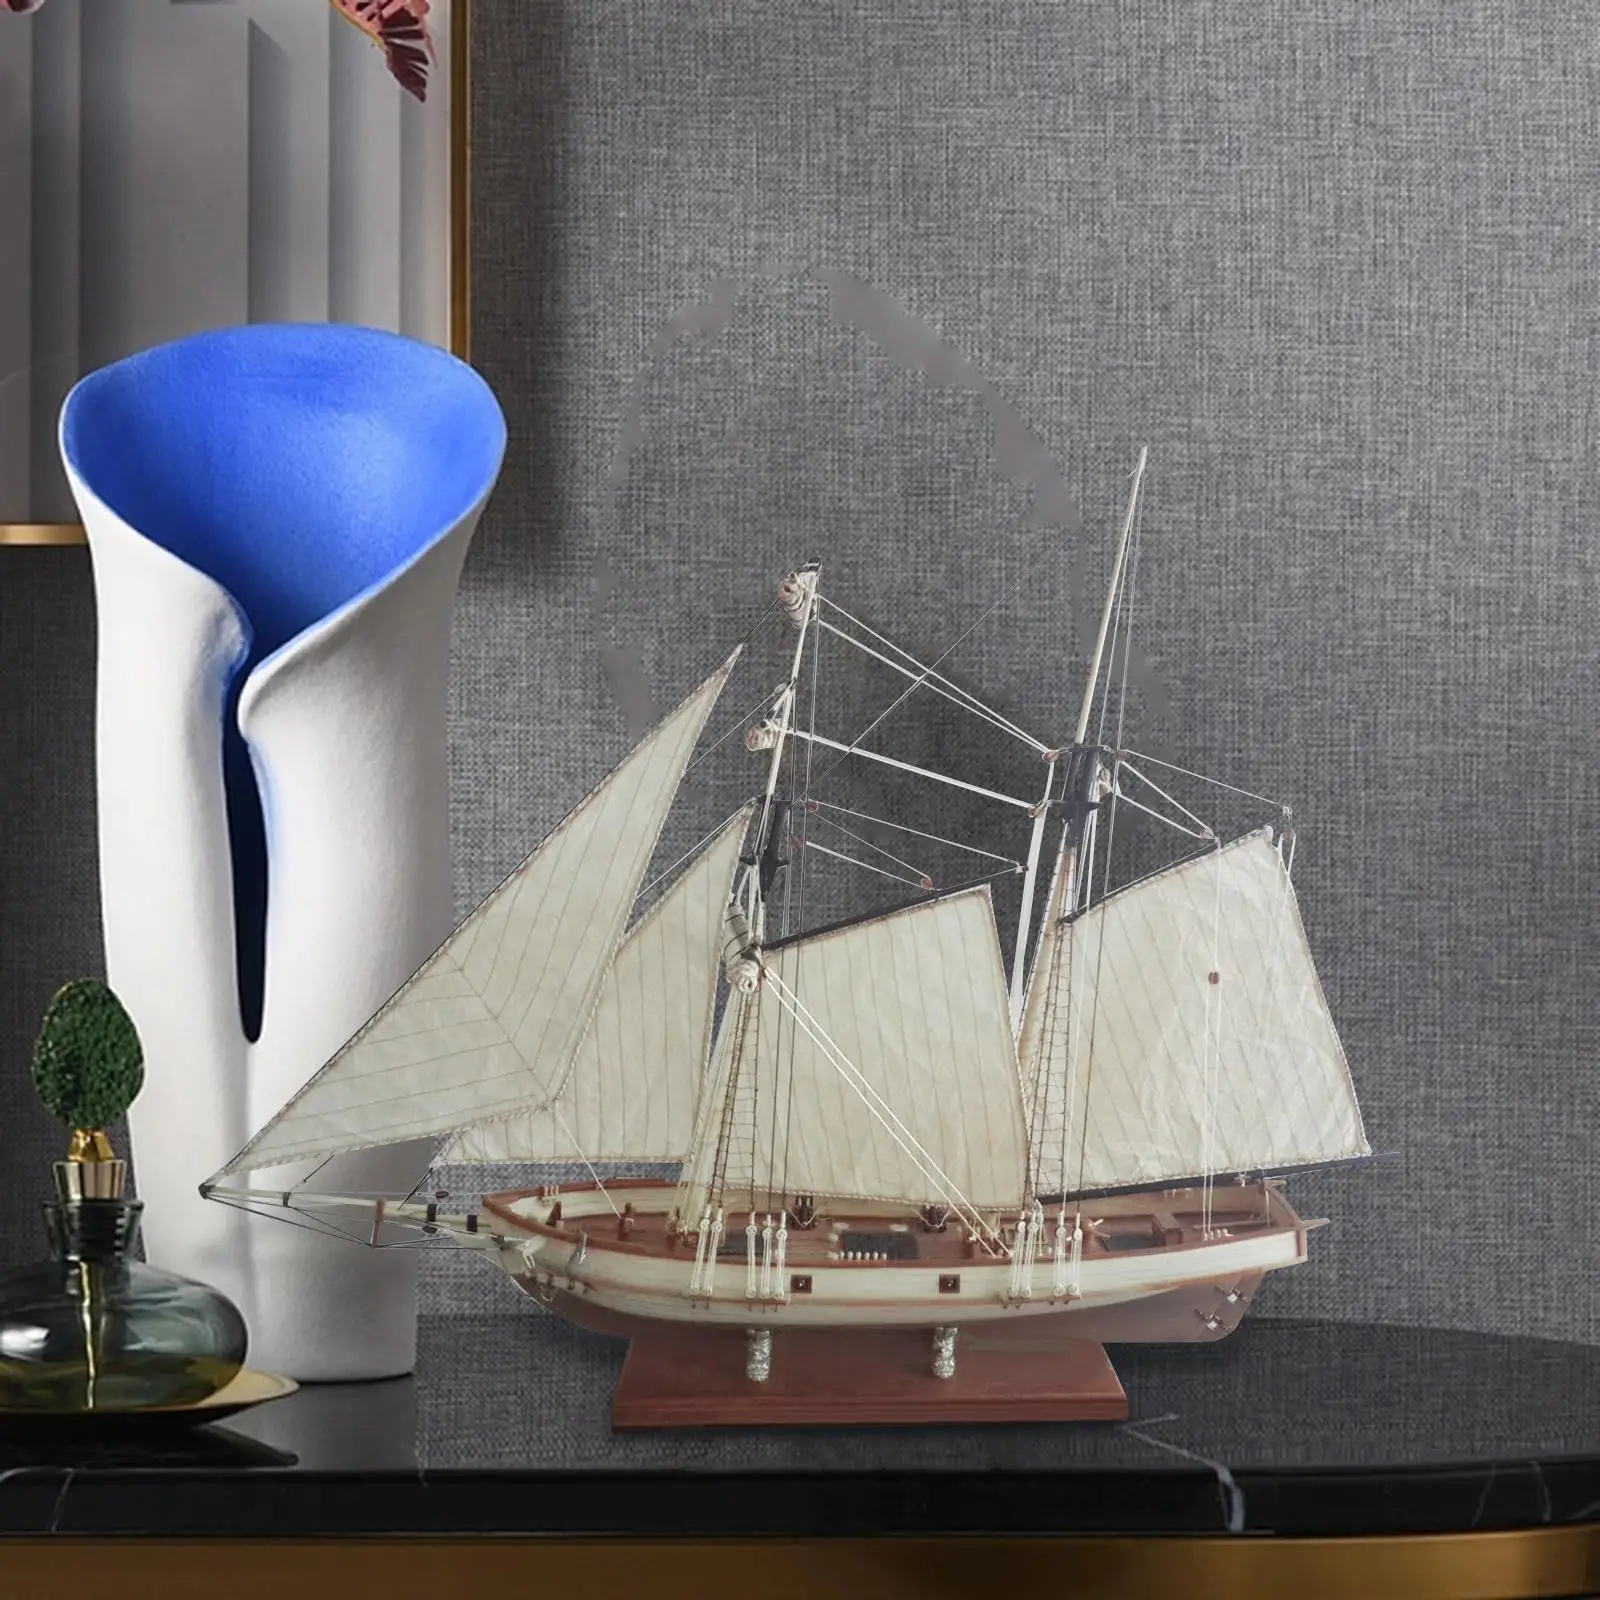 

Деревянная парусная лодка 1/70, необработанная винтажная модель корабля, пазл 3D «сделай сам» для дома, офиса, коллекционные предметы для детей и взрослых